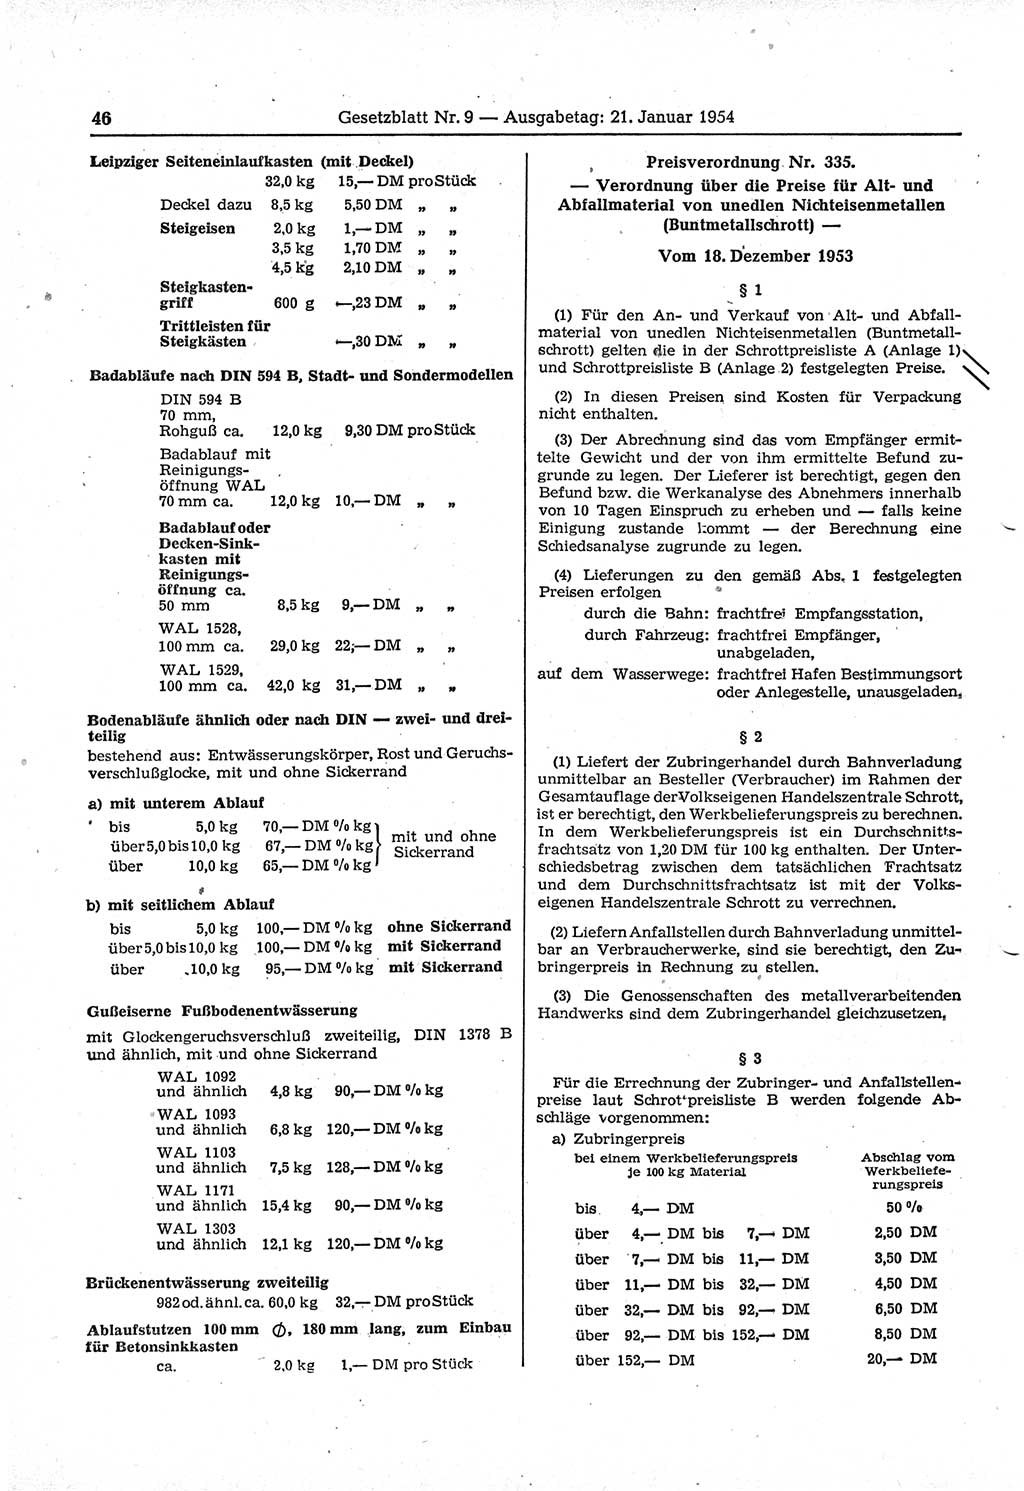 Gesetzblatt (GBl.) der Deutschen Demokratischen Republik (DDR) 1954, Seite 46 (GBl. DDR 1954, S. 46)